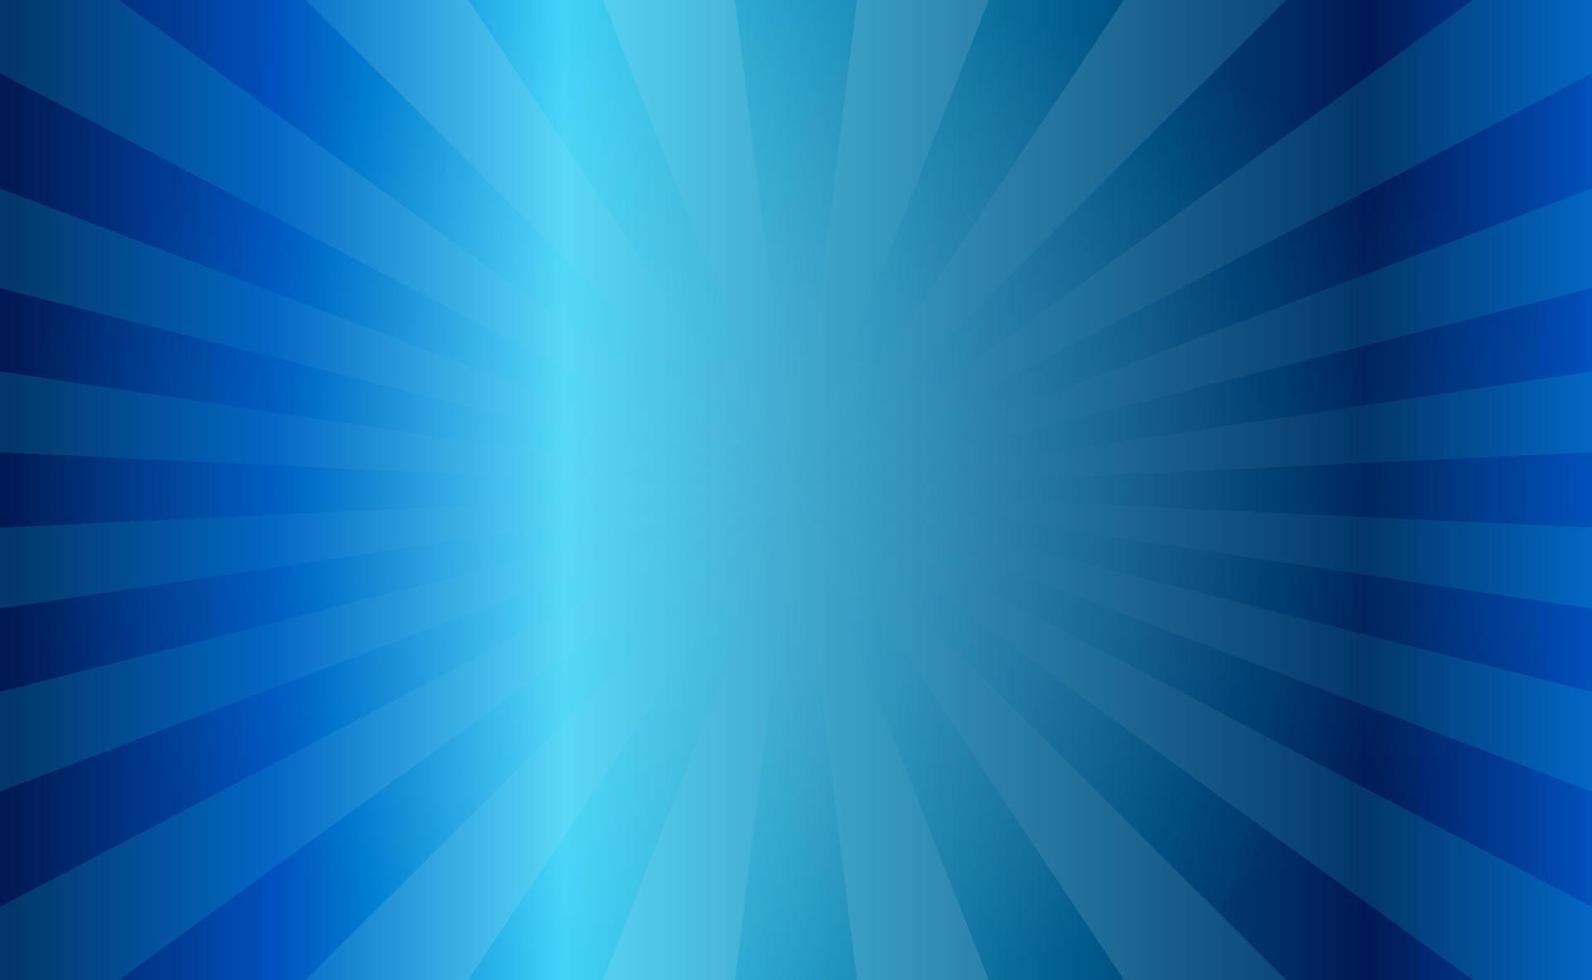 blu Sunray sfondo design gratuito Scarica vettore